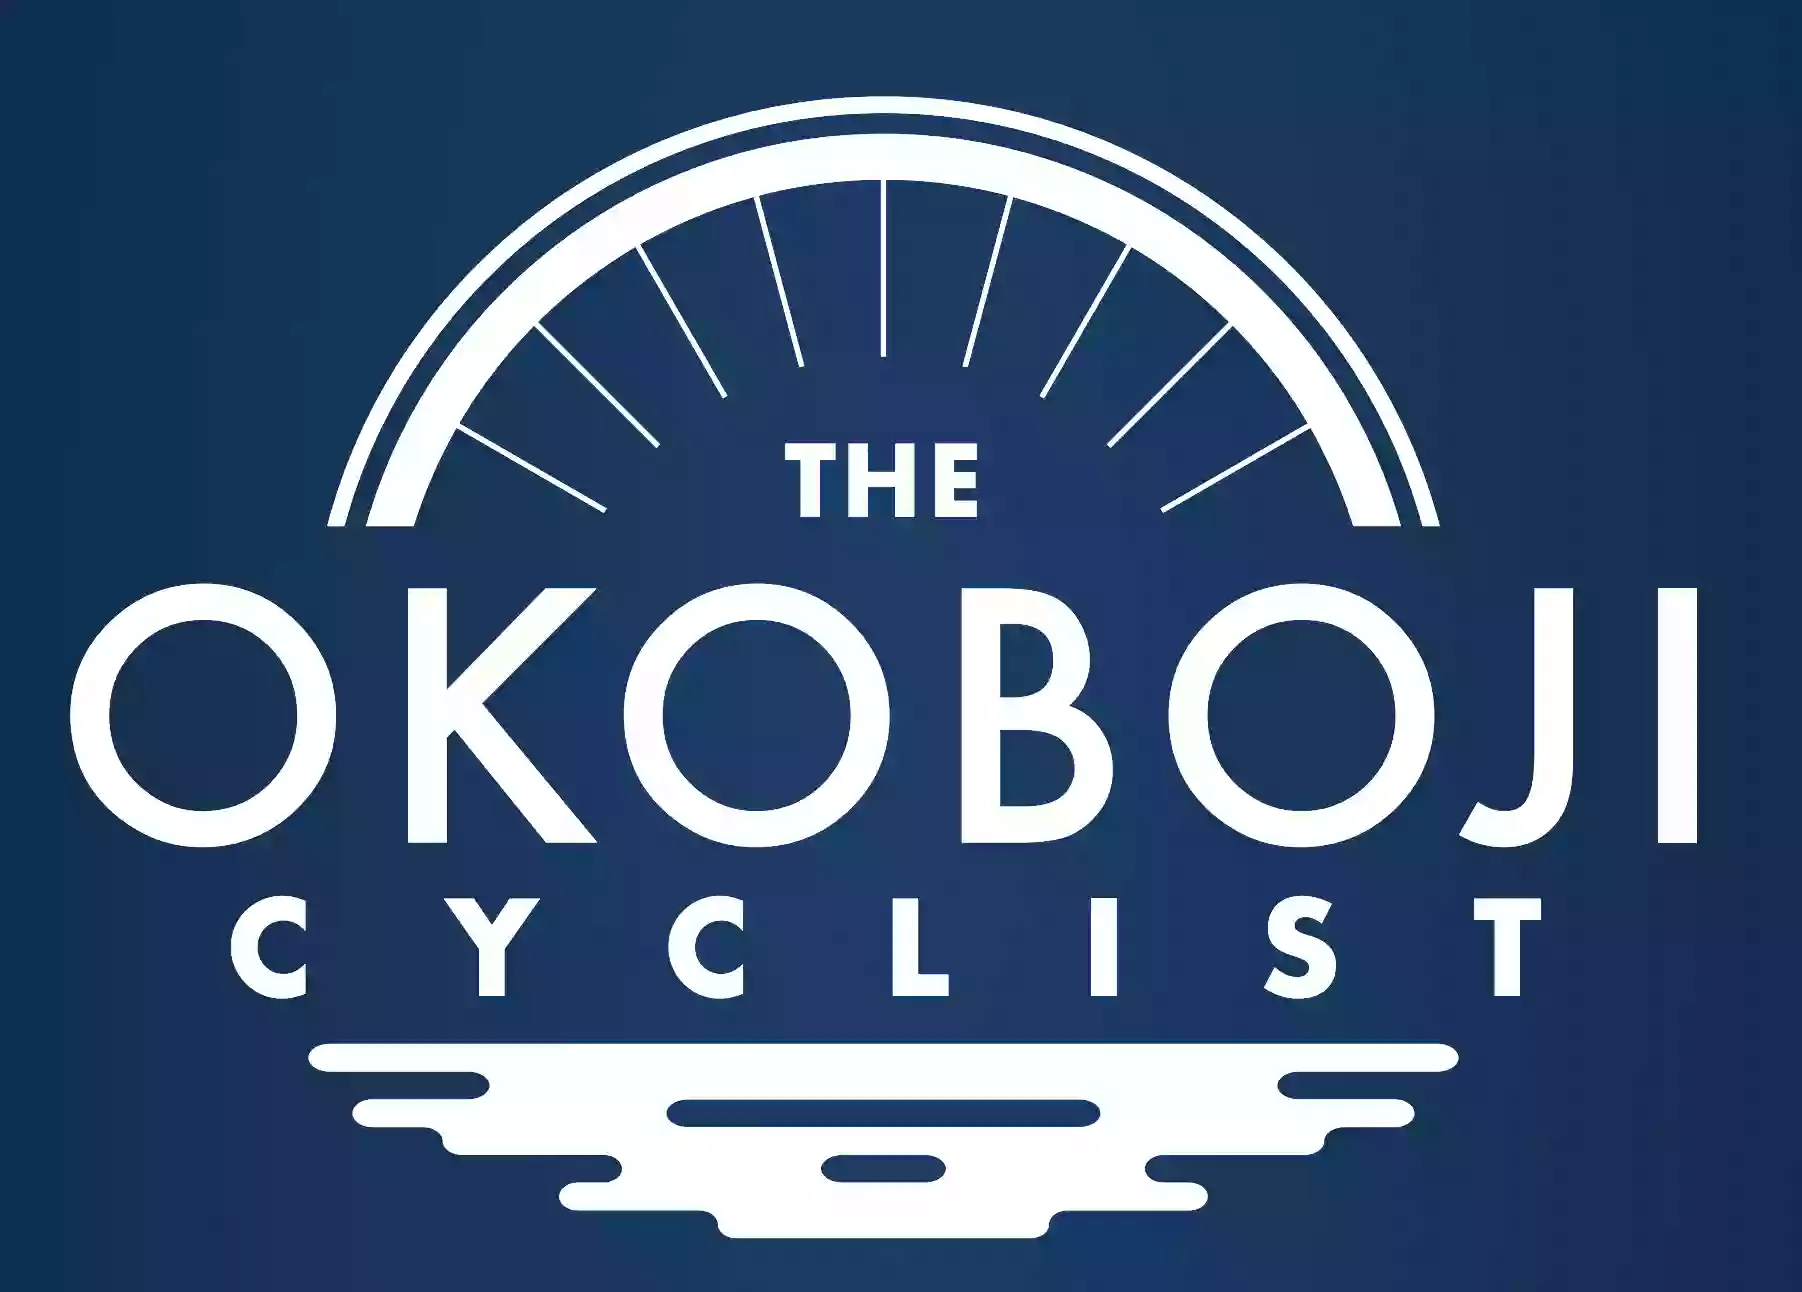 The Okoboji Cyclist